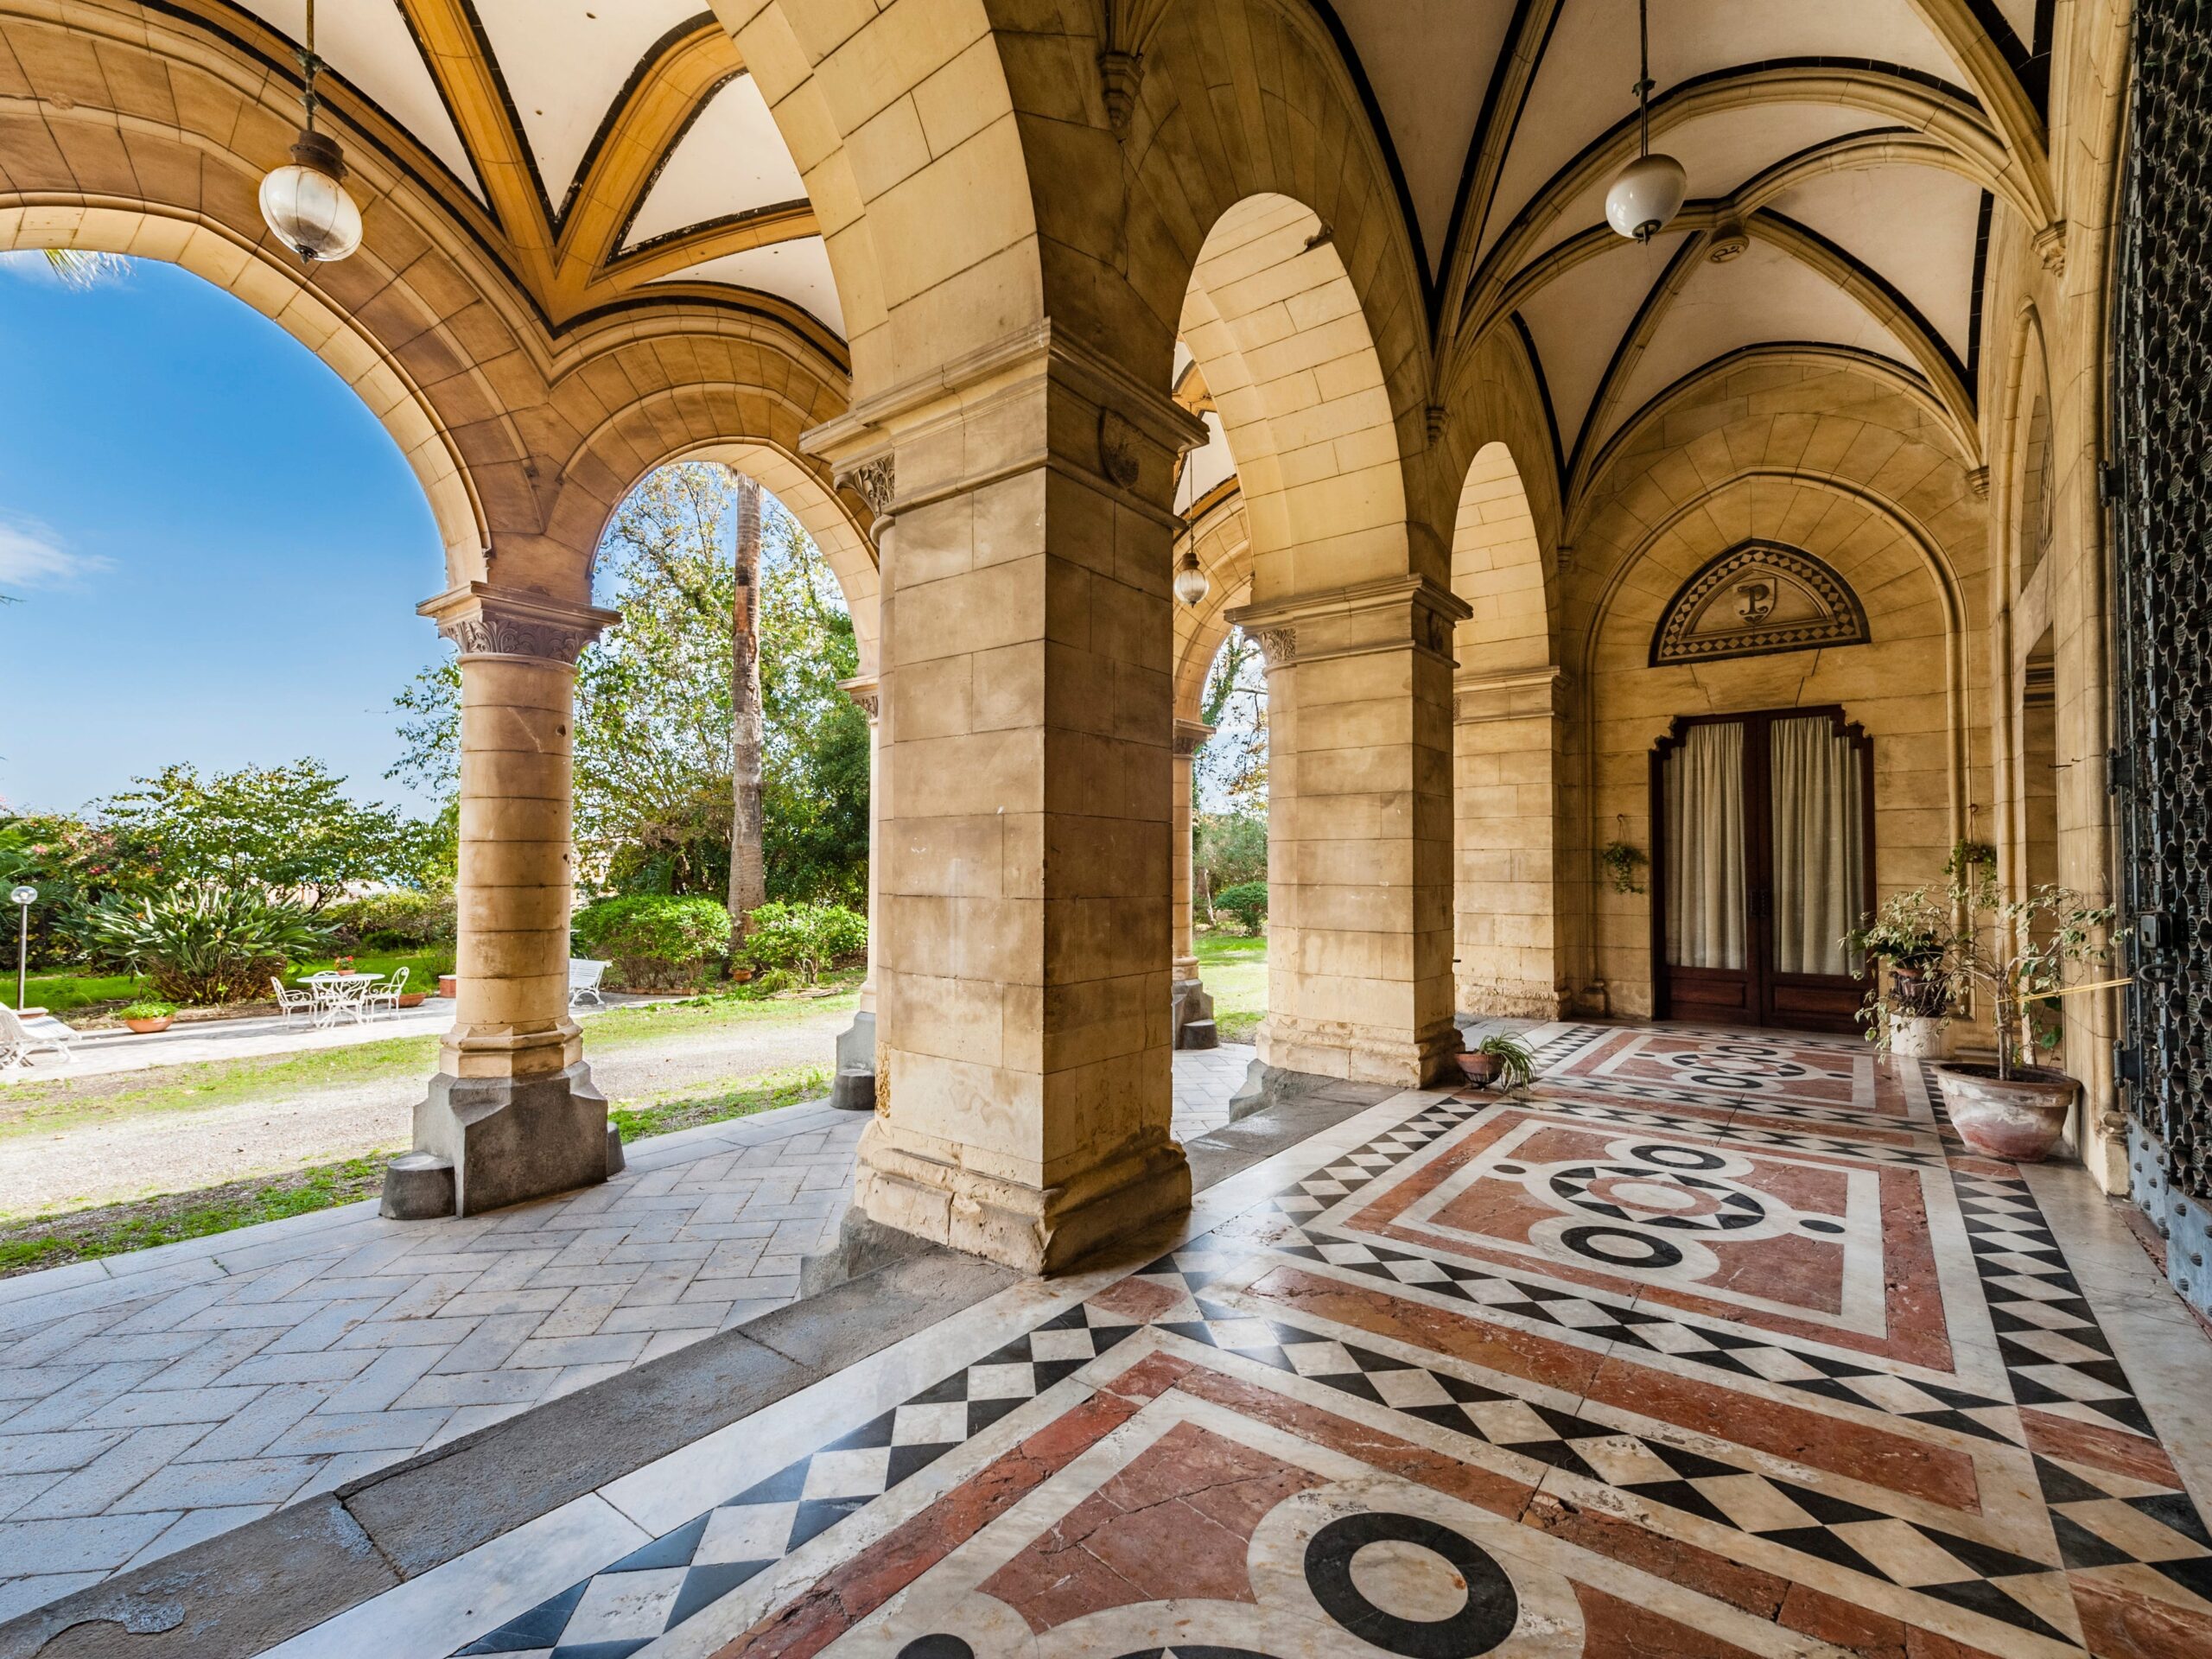 Entrance to Castello Pennisi di Floristella in Acireale, Sicily